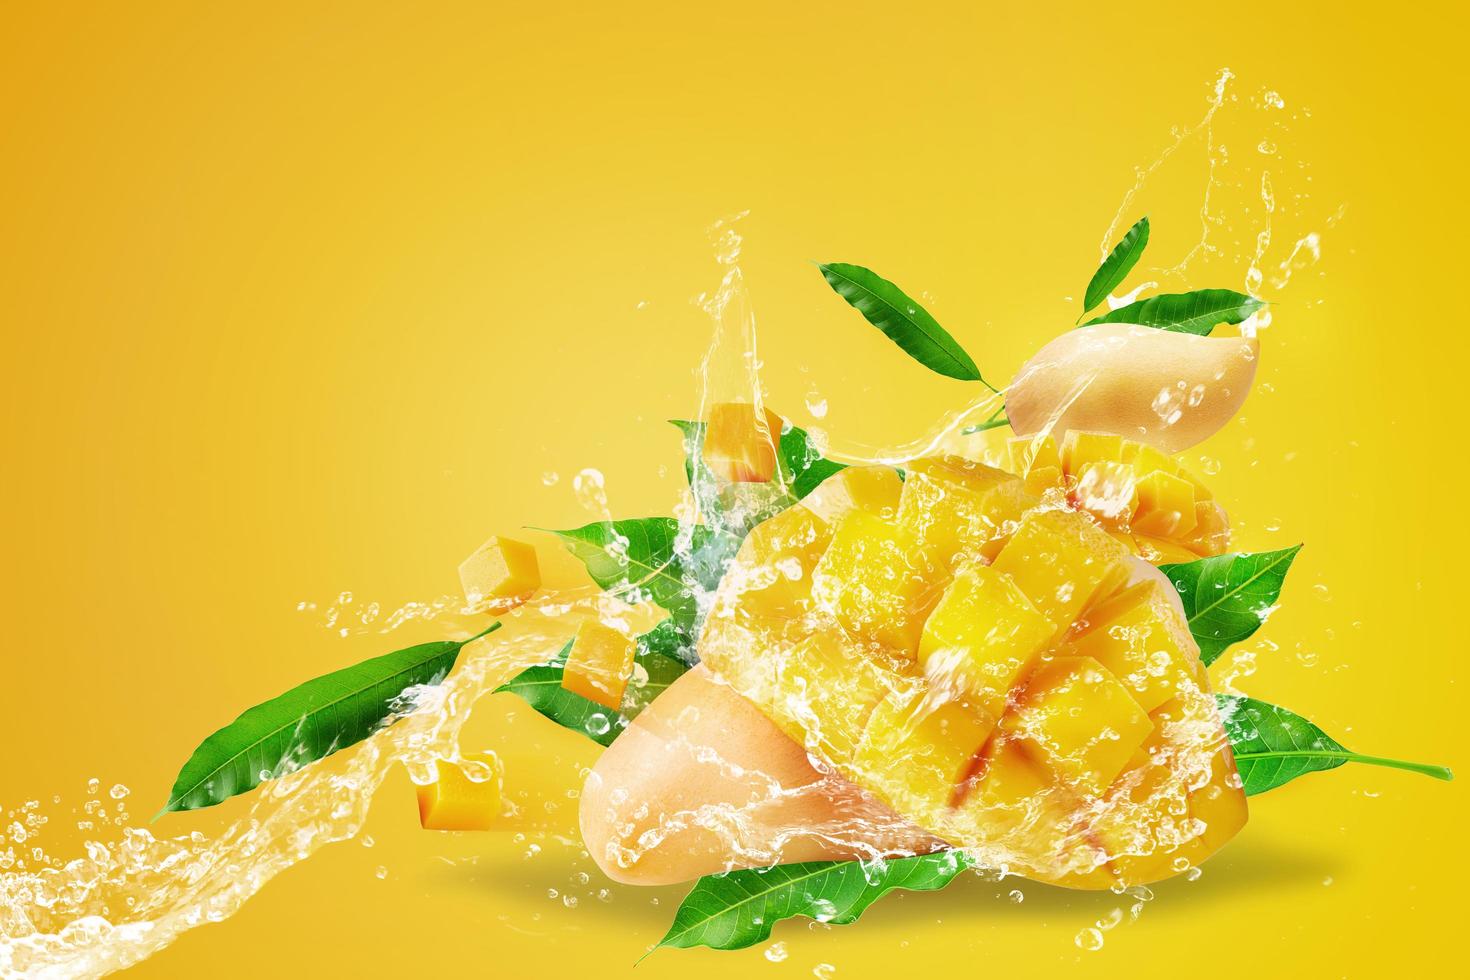 acqua che spruzza sulla frutta fresca di mango affettata foto